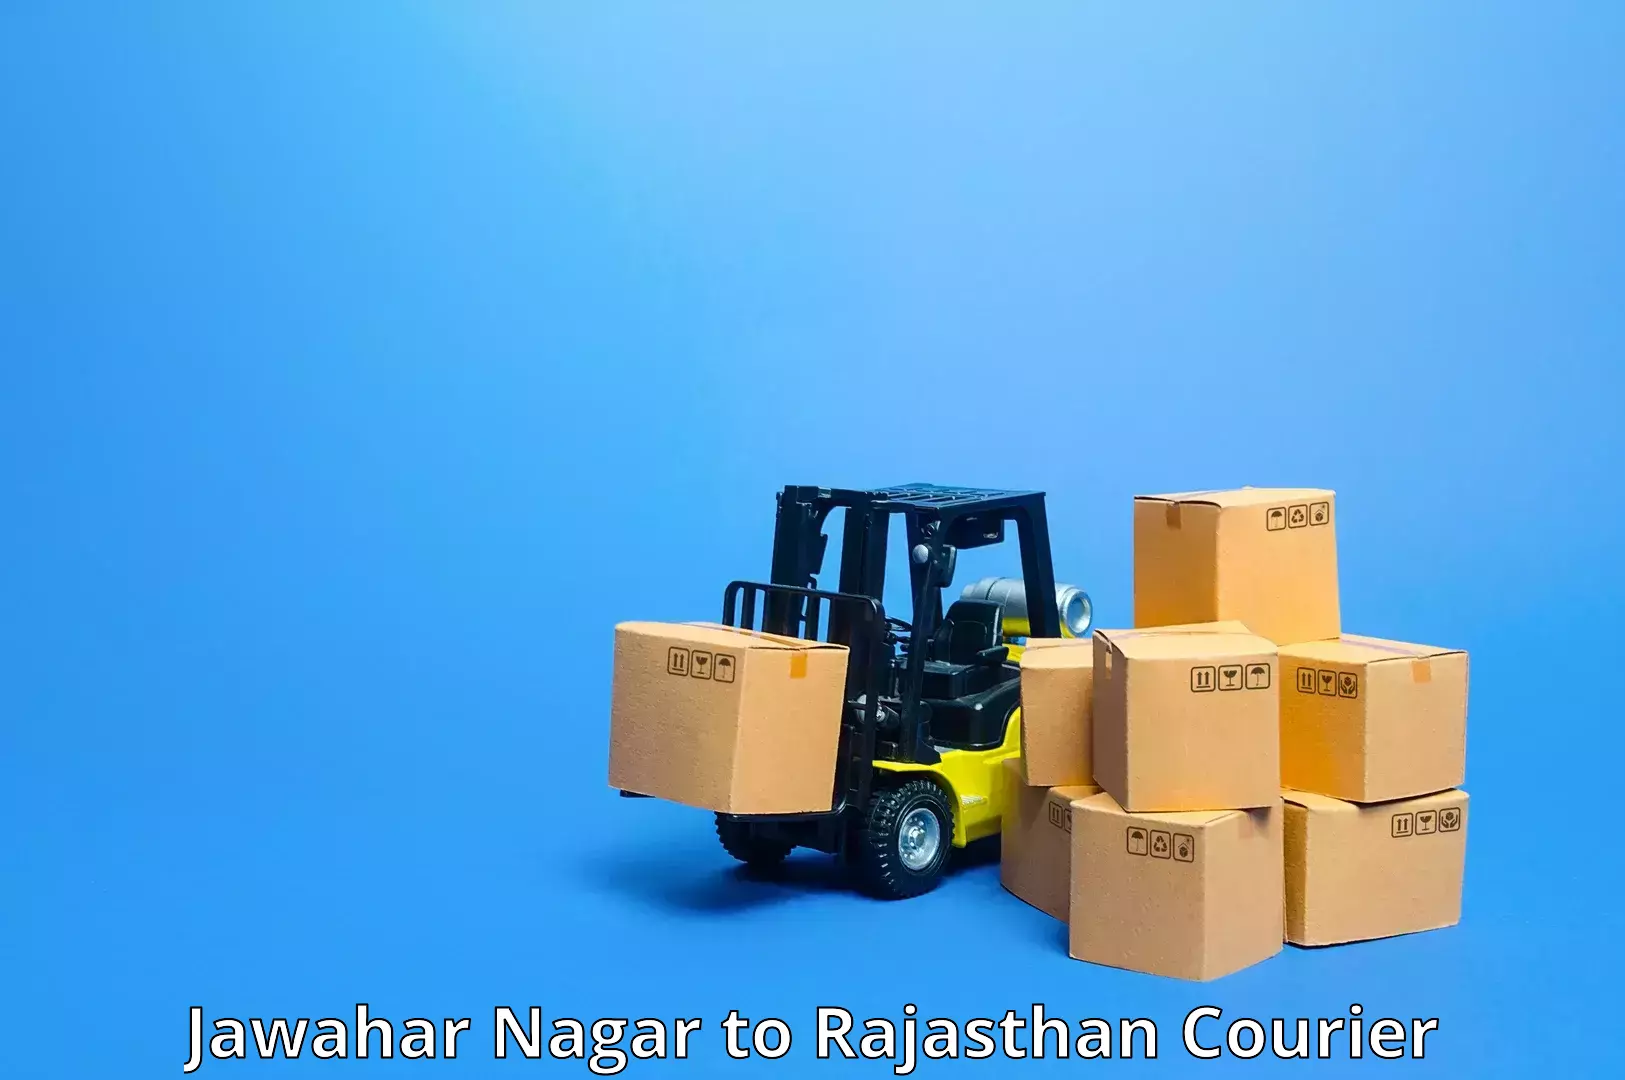 High-speed parcel service Jawahar Nagar to Malsisar